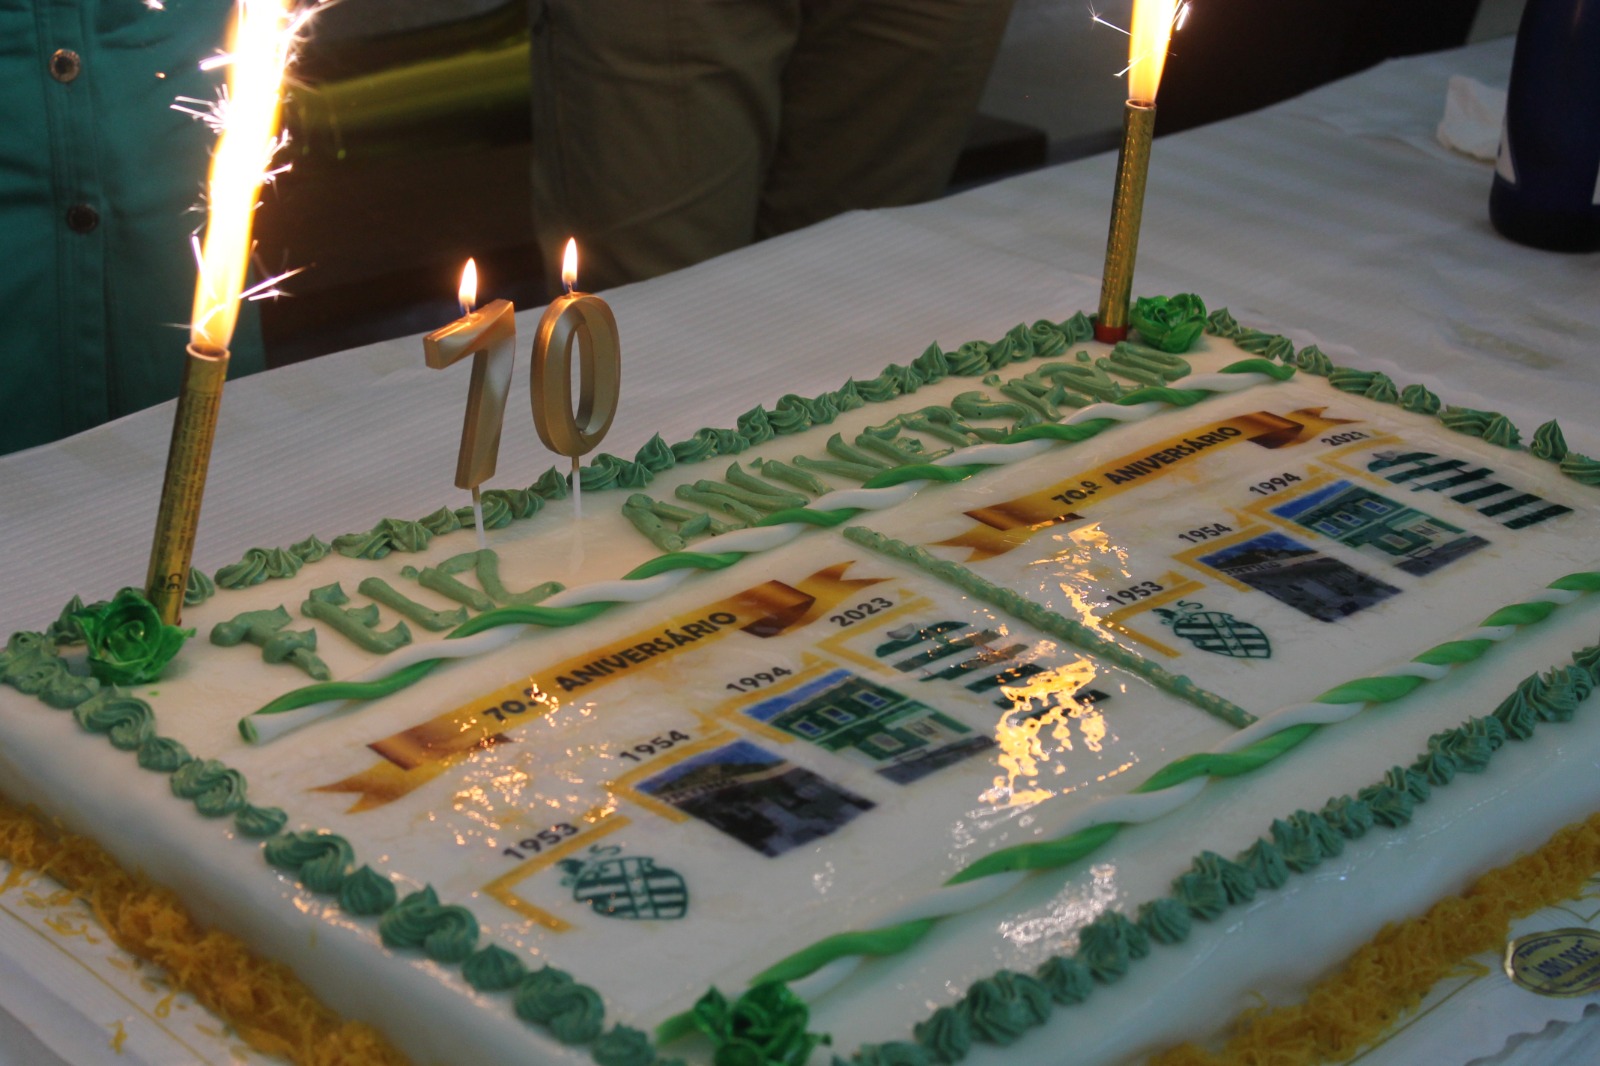 70º Aniversário do SPORTING CLUBE DE CASAINHOS fundado em 05 julho de 1953. Uma vida em prol do associativismo e da comunidade, com um excelente trabalho ao longo de gerações. Bem Hajam!